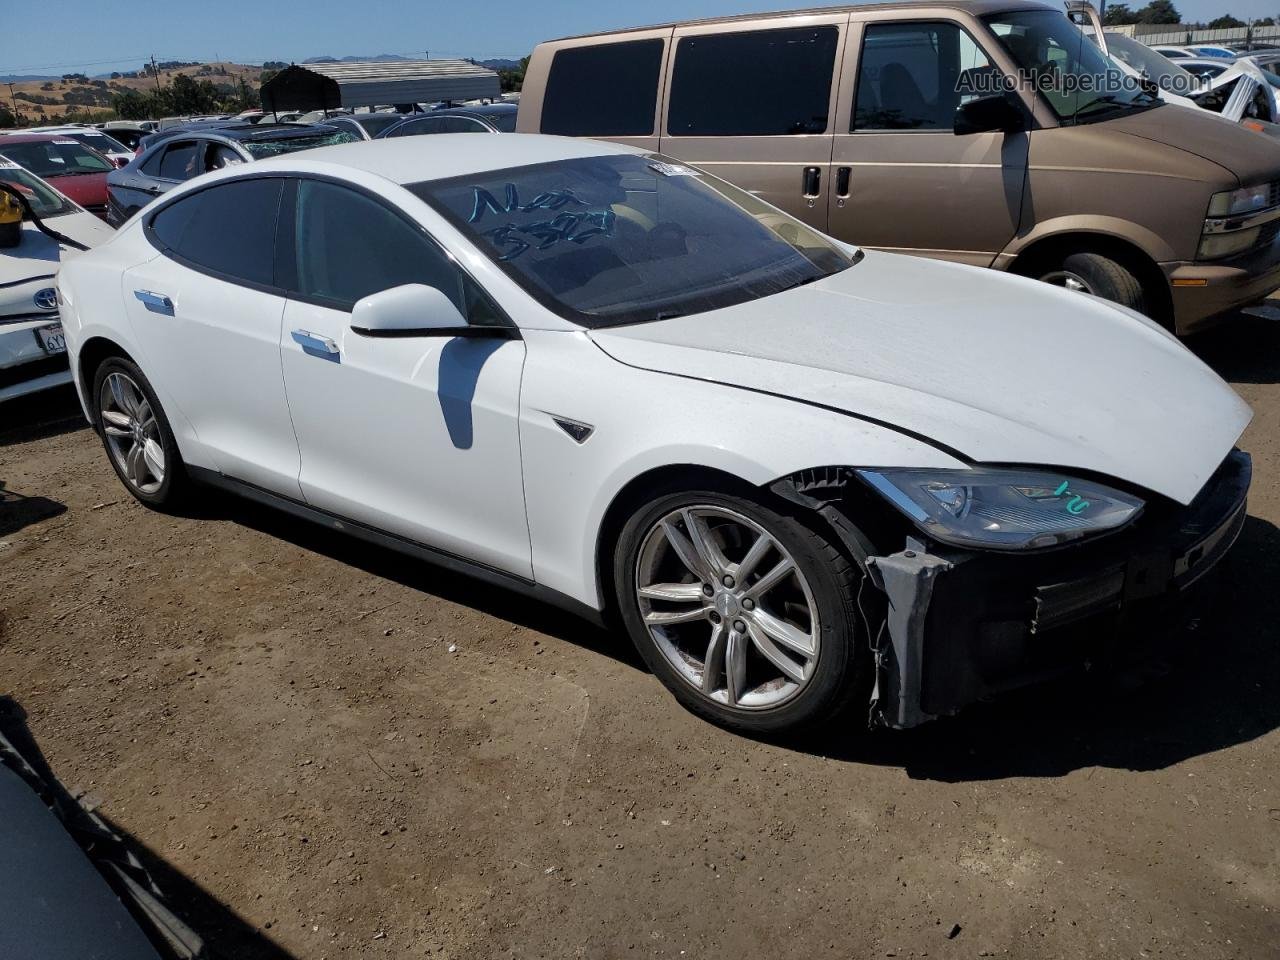 2014 Tesla Model S  White vin: 5YJSA1S12EFP57511